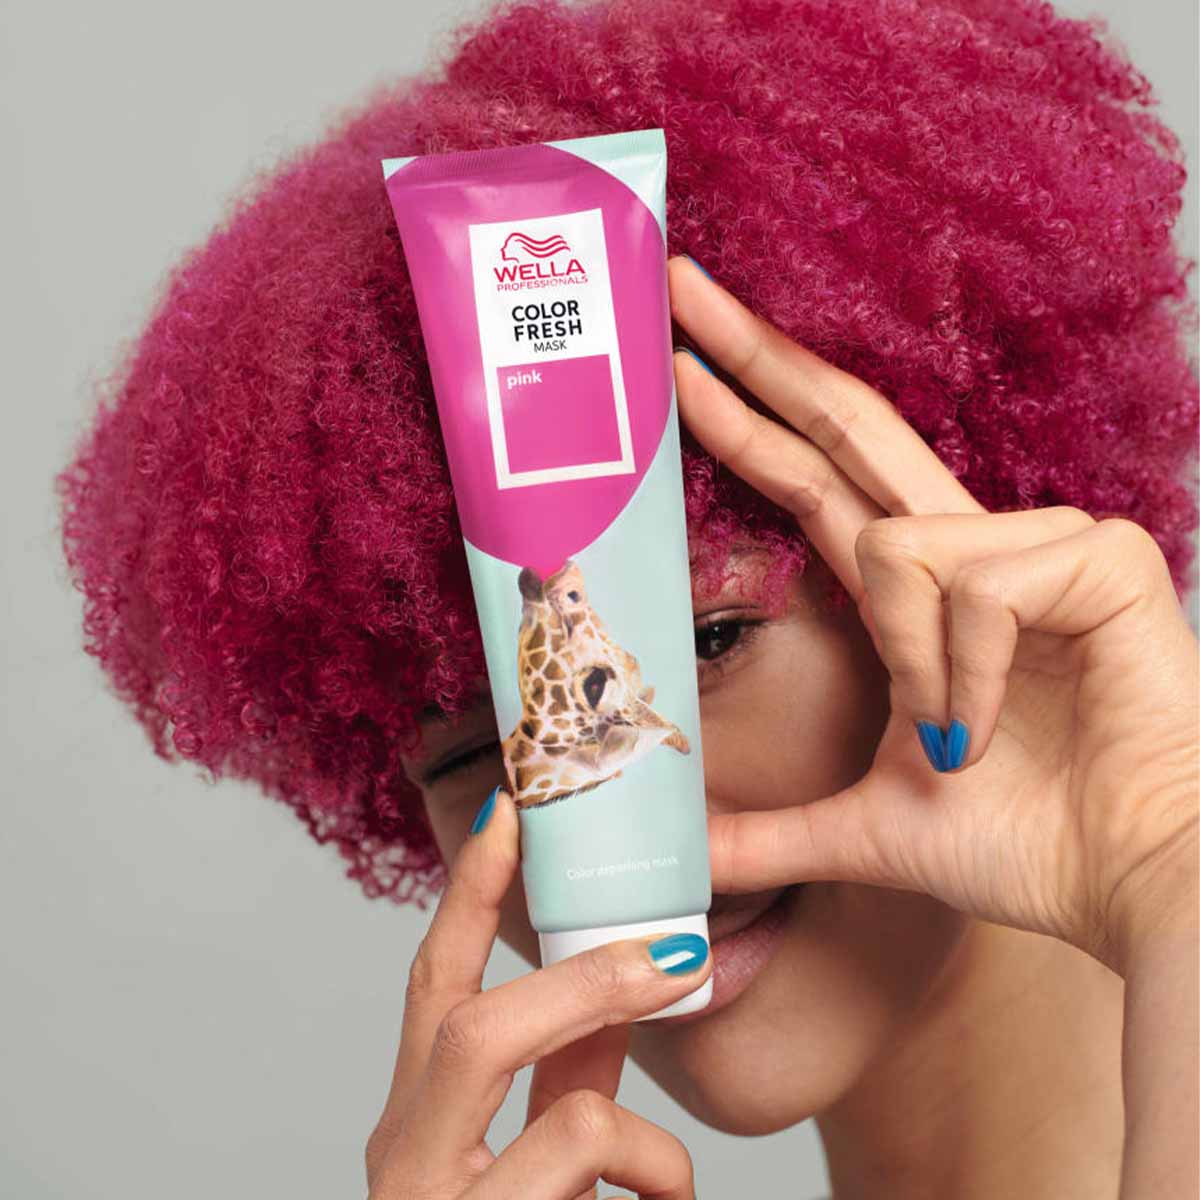 Color Fresh Mask Wella : La révolution du soin capillaire - Salon Coralie Aumaitre